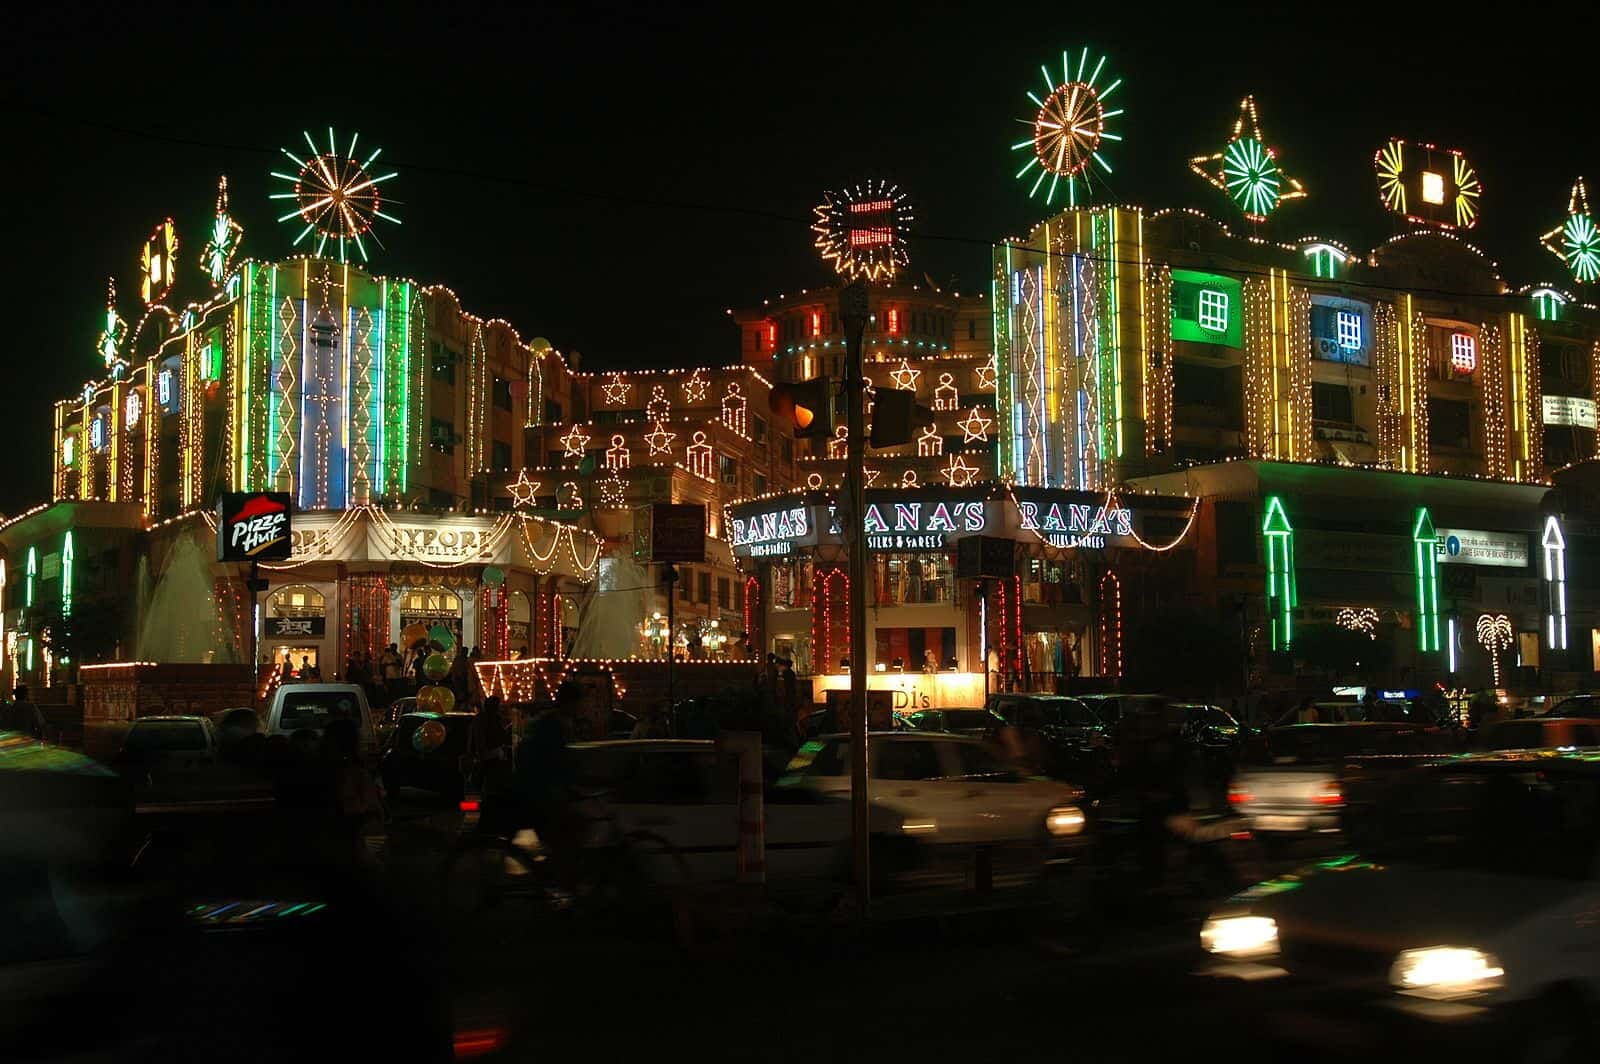 Markets of Jaipur during Diwali